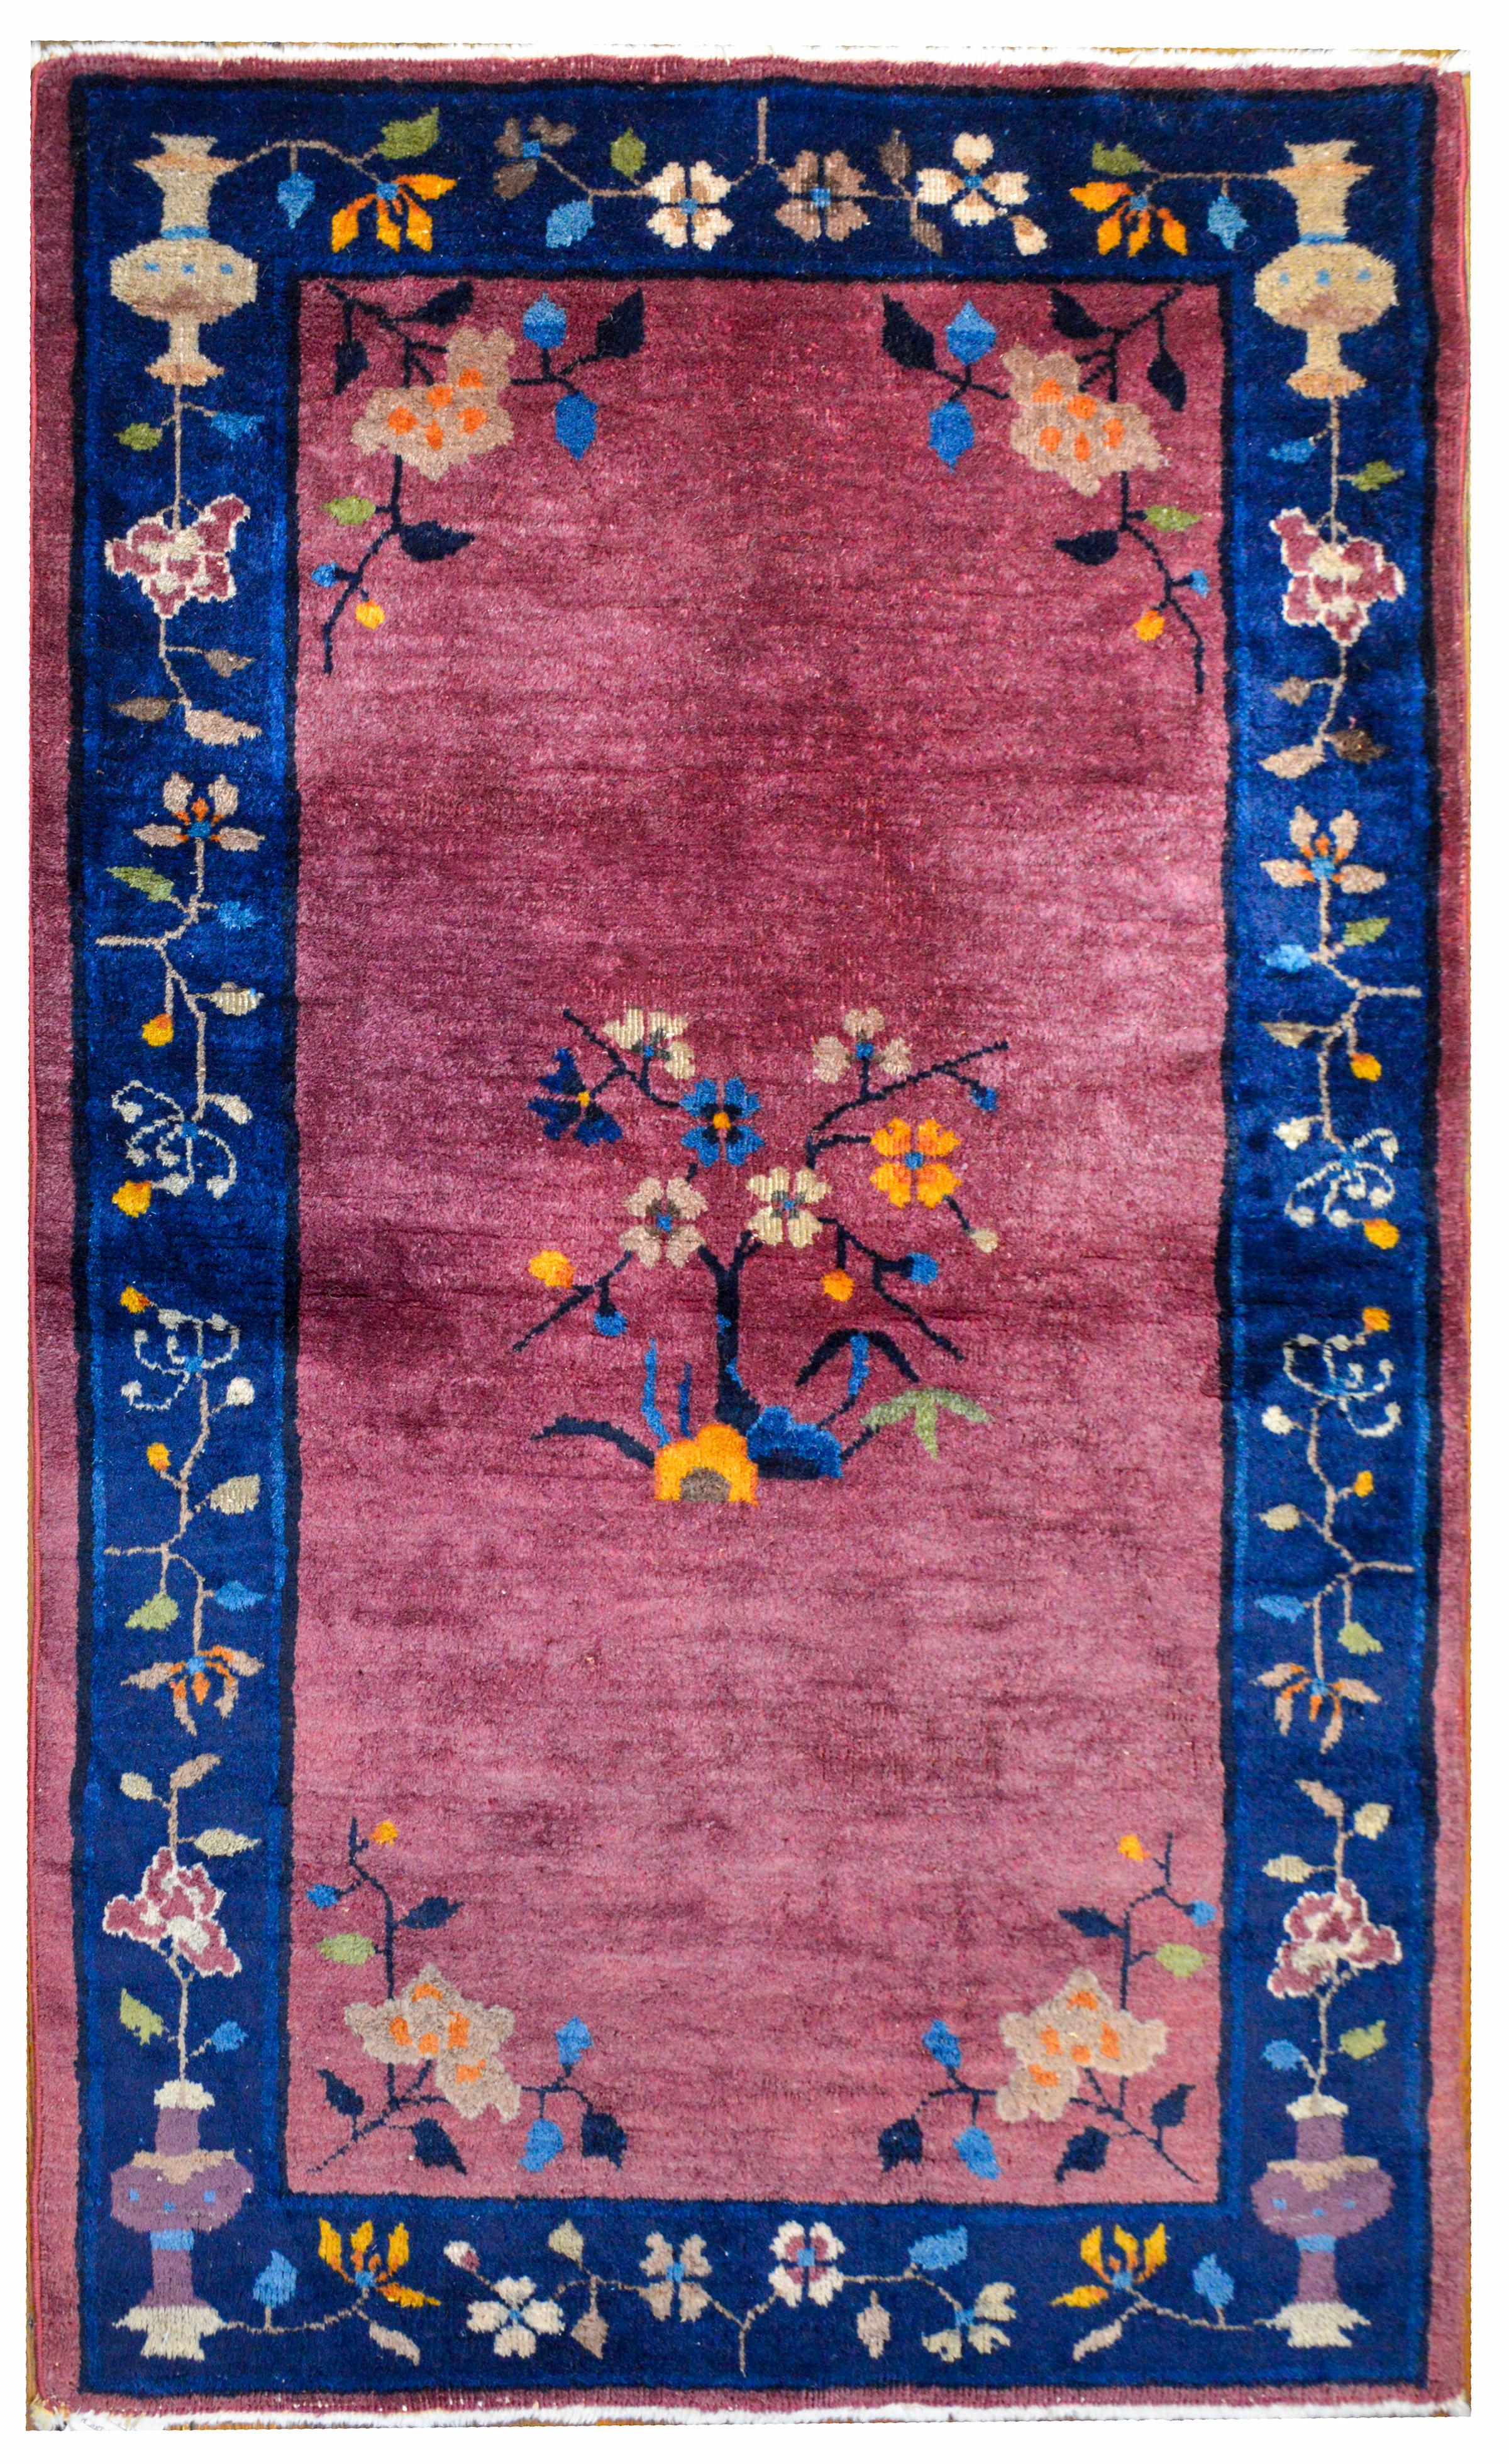 Magnifique tapis chinois Art Déco du début du 20ème siècle avec un riche champ lavande entouré d'une large bordure à rayures indigo. Le champ présente un cerisier en fleurs au centre, avec une pivoine dans chaque coin, entouré d'une bordure à motifs